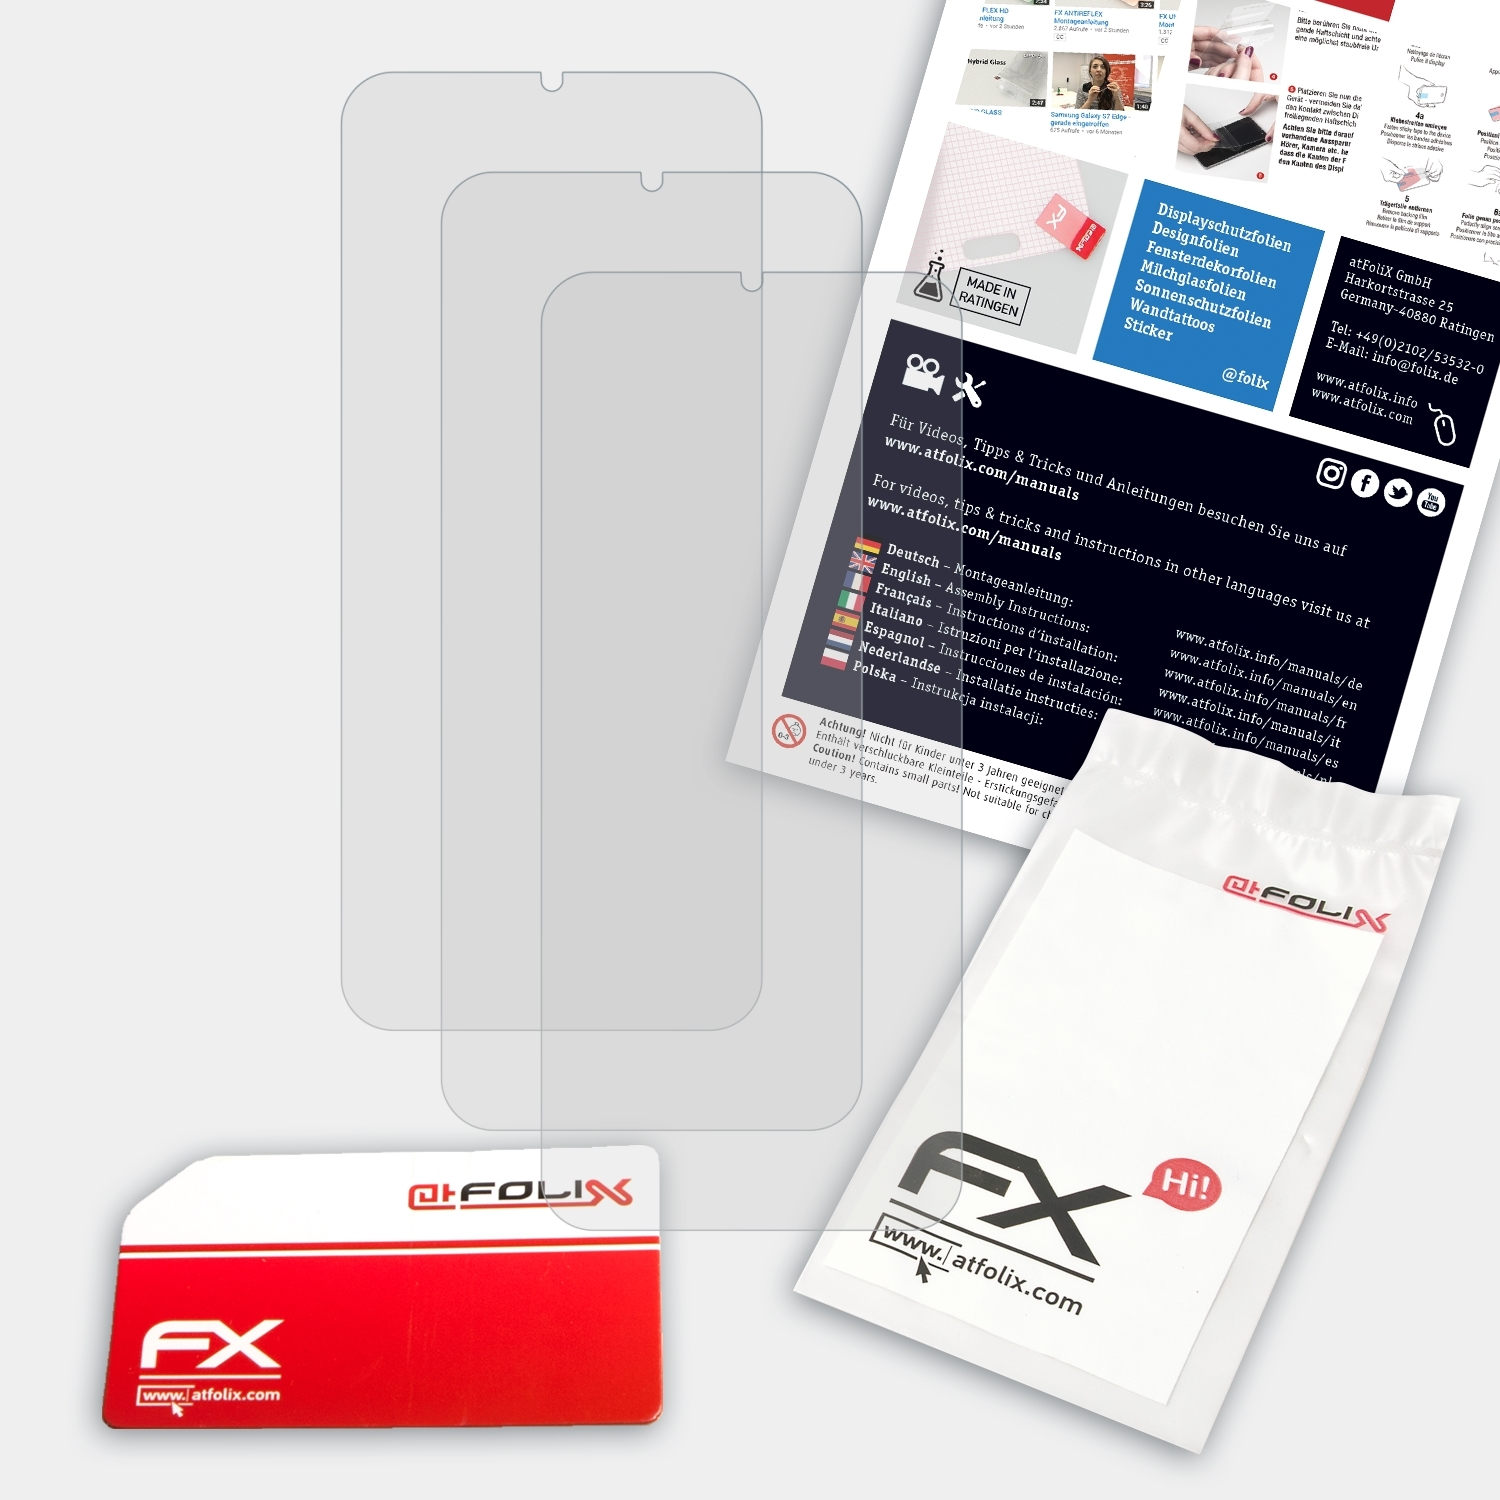 Displayschutz(für FX-Antireflex Ulefone 3x 7P) Note ATFOLIX